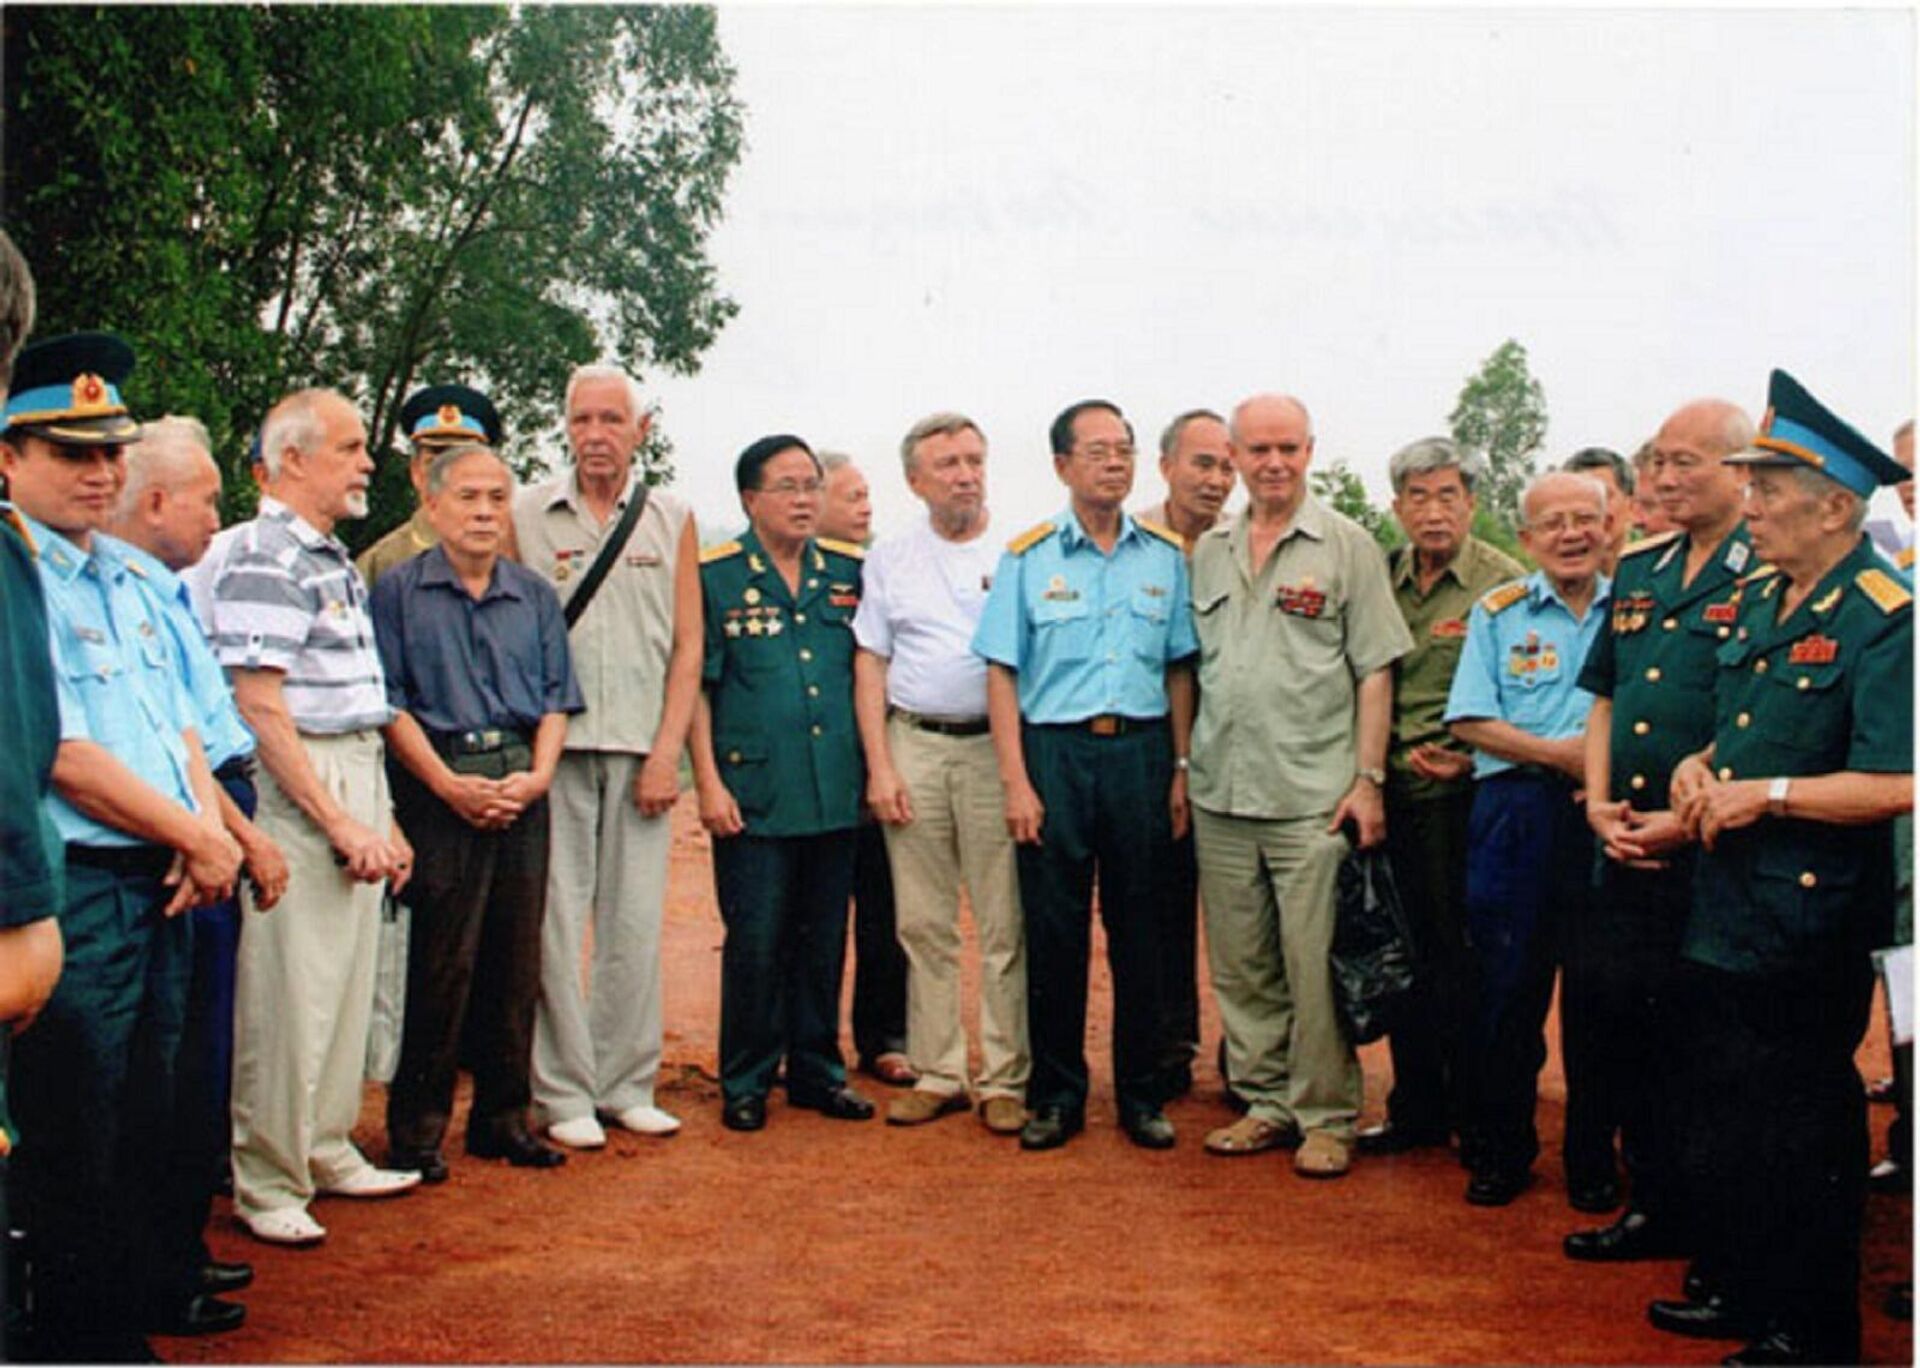 Reunión de los participantes en la 1ª batalla de misiles antiaéreos 50 años después en el emplazamiento de la antigua posición de combate de sistemas de defensa antiaérea, Vietnam, 24 de julio de 2015 - Sputnik Mundo, 1920, 30.03.2023